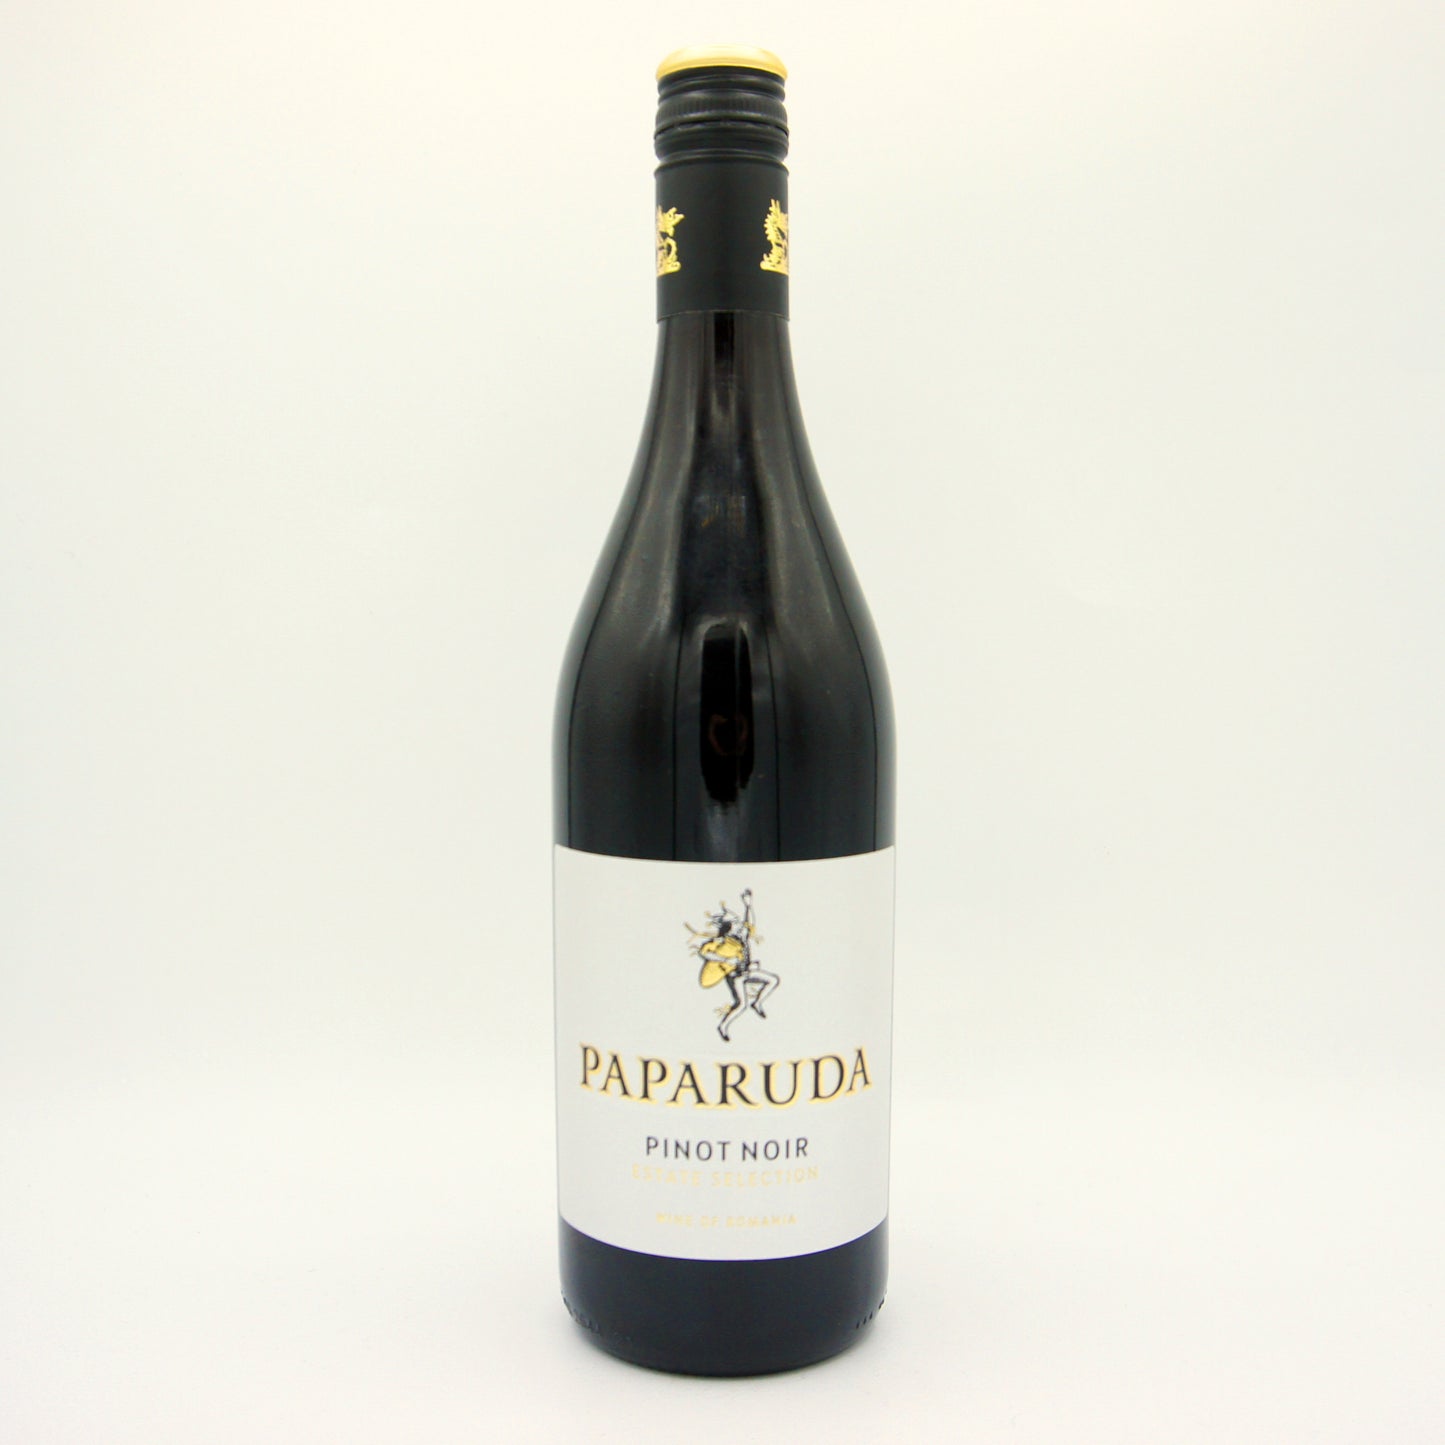 Paparuda Pinot Noir